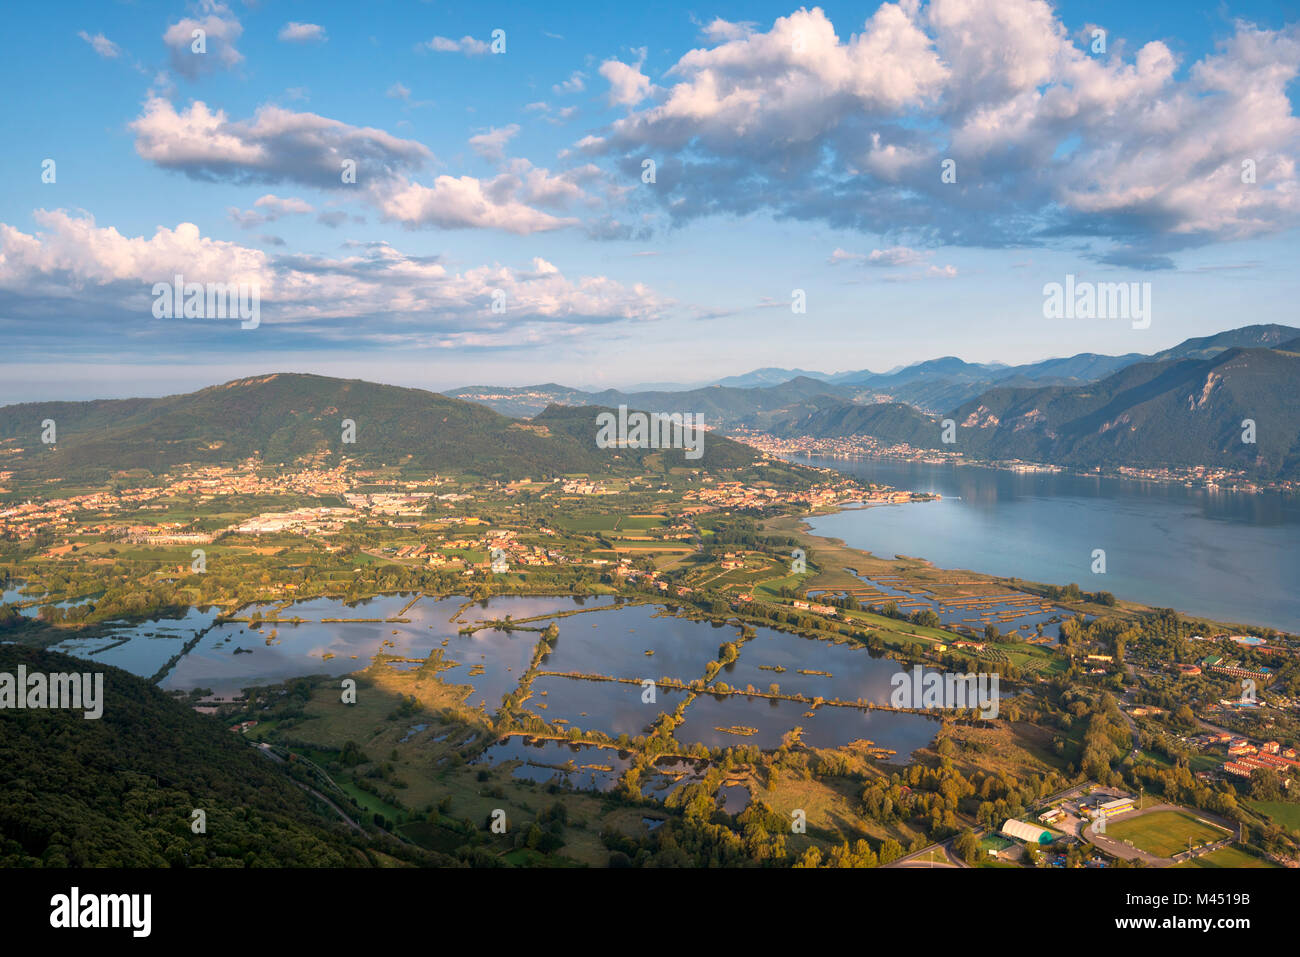 Vue panoramique à l'aube sur le lac d'Iseo, province de Brescia en Lombardie, Italie, district de l'Europe. Banque D'Images